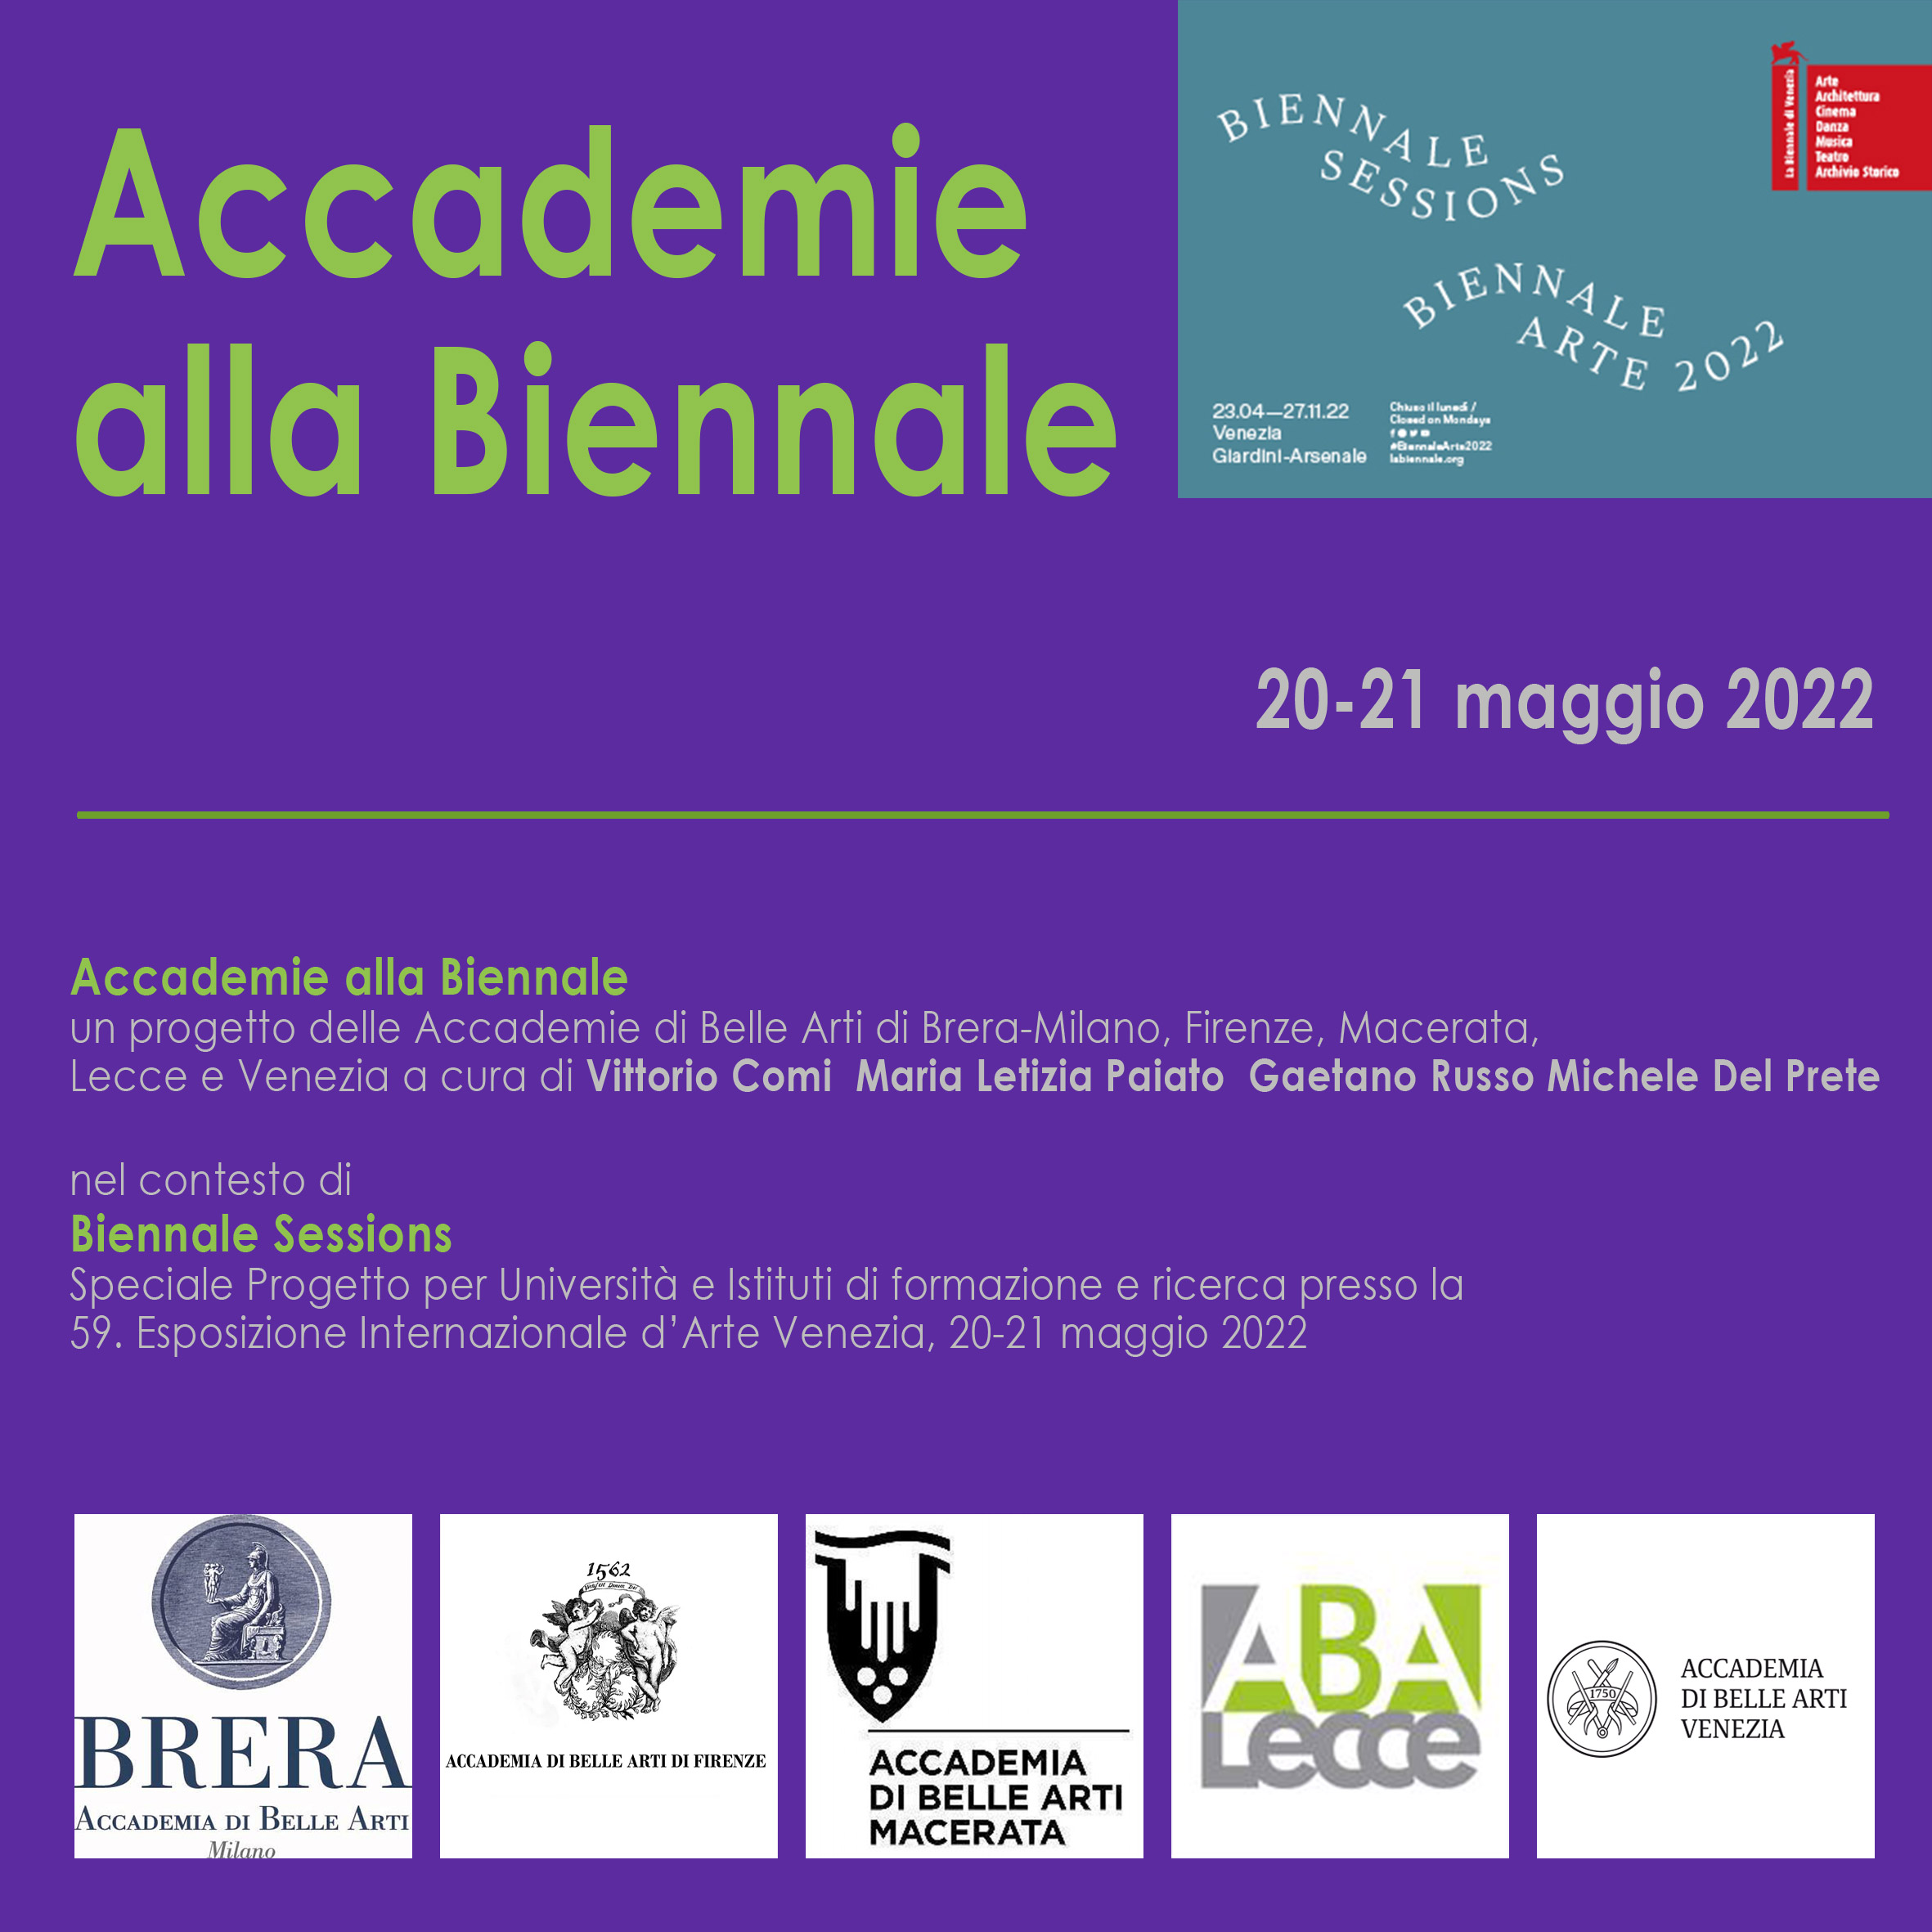 Accademie alla Biennale